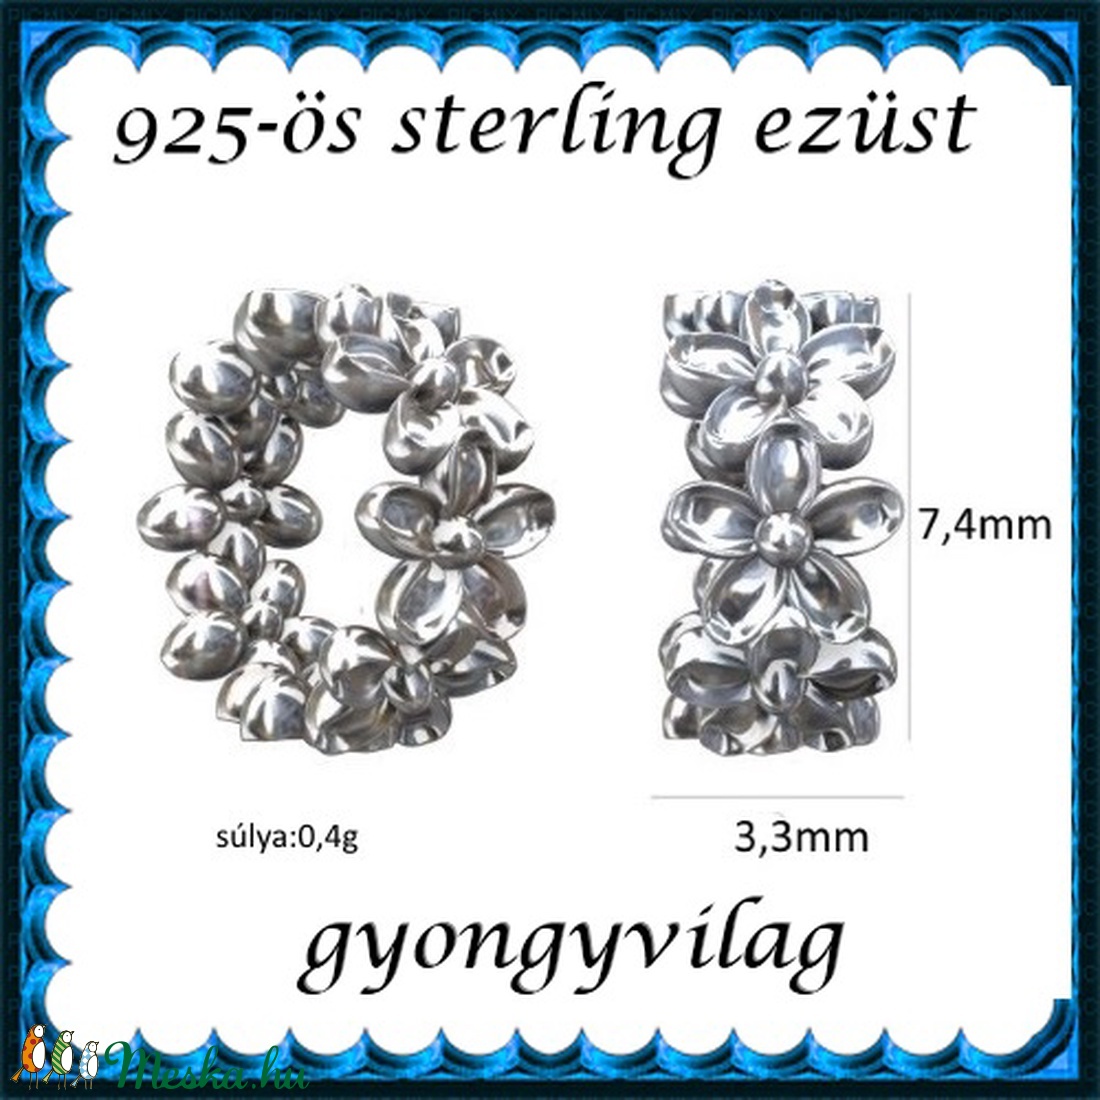 925-ös sterling ezüst ékszerkellék: köztes / gyöngy / dísz EKÖ 66rh - gyöngy, ékszerkellék - egyéb alkatrész - Meska.hu